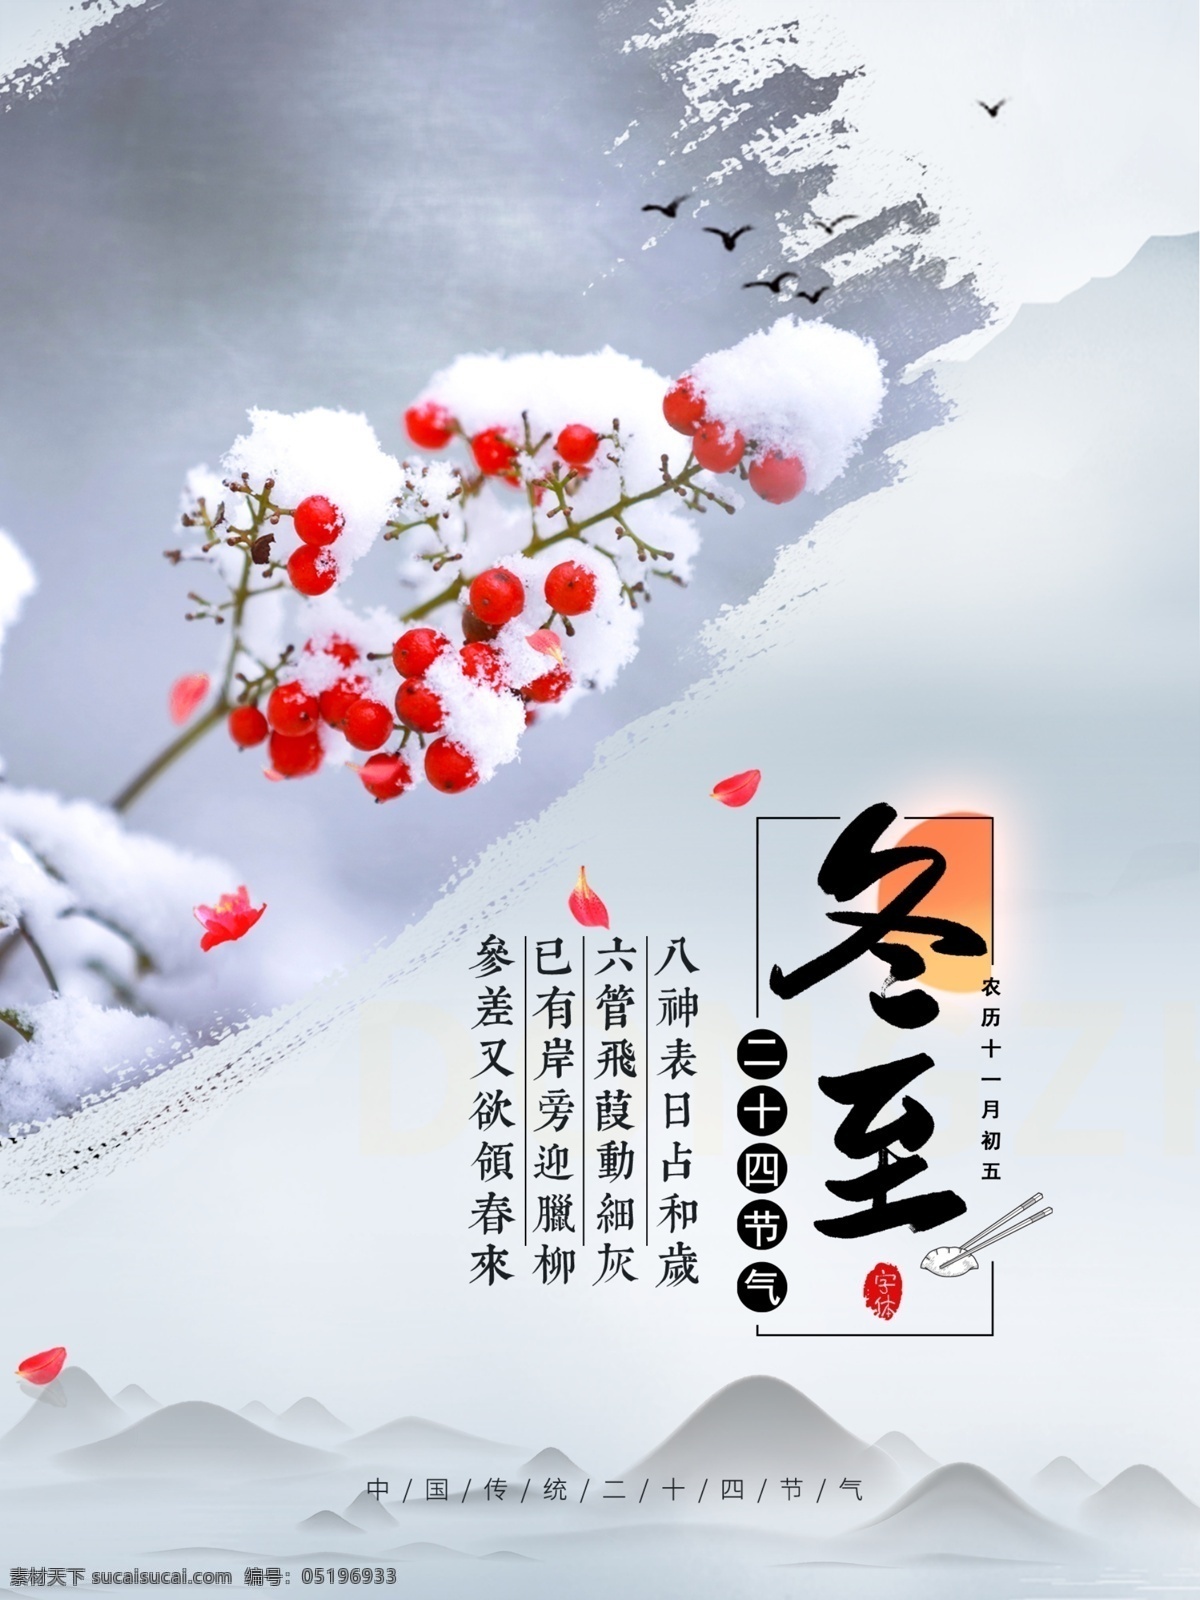 冬至海报图片 冬至 中国风 传统 节日 冬天 雪花 水墨 山 分层